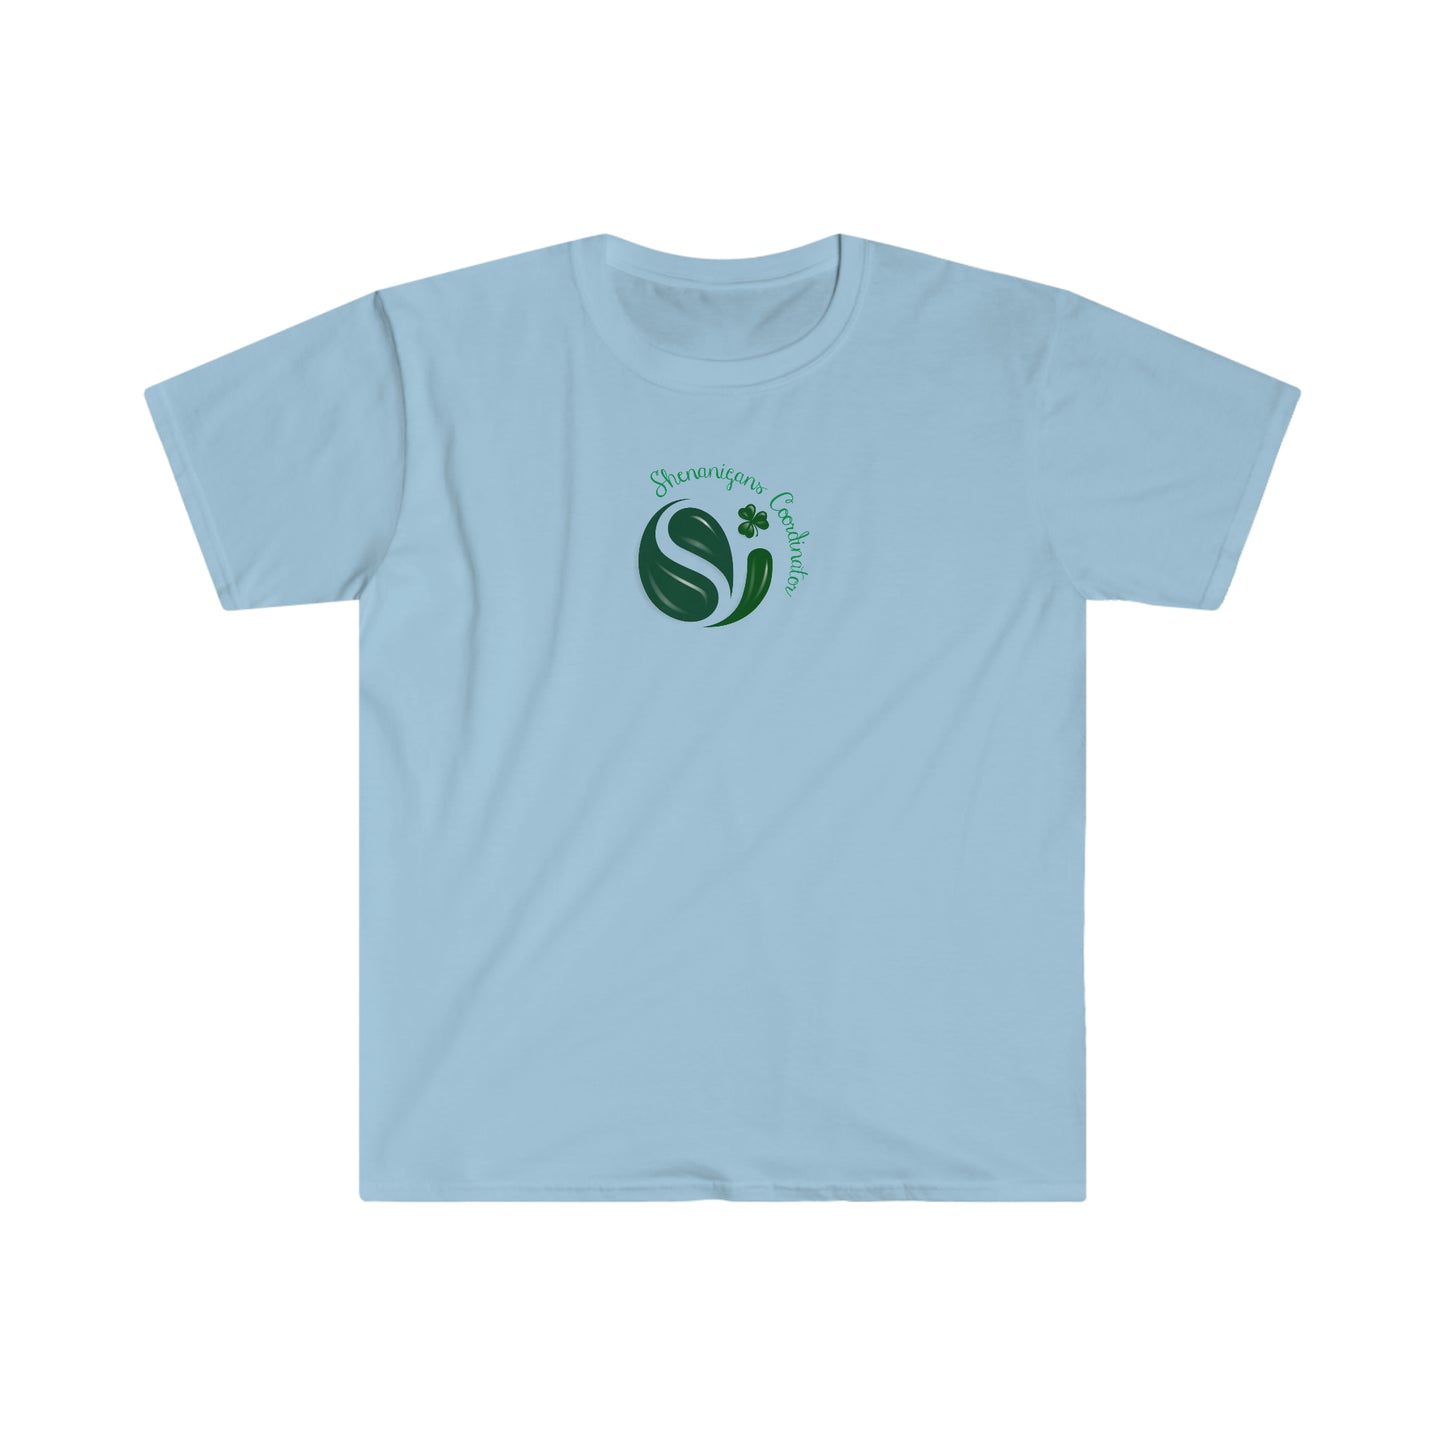 Shenanigans Coordinator Unisex Softstyle T-Shirt